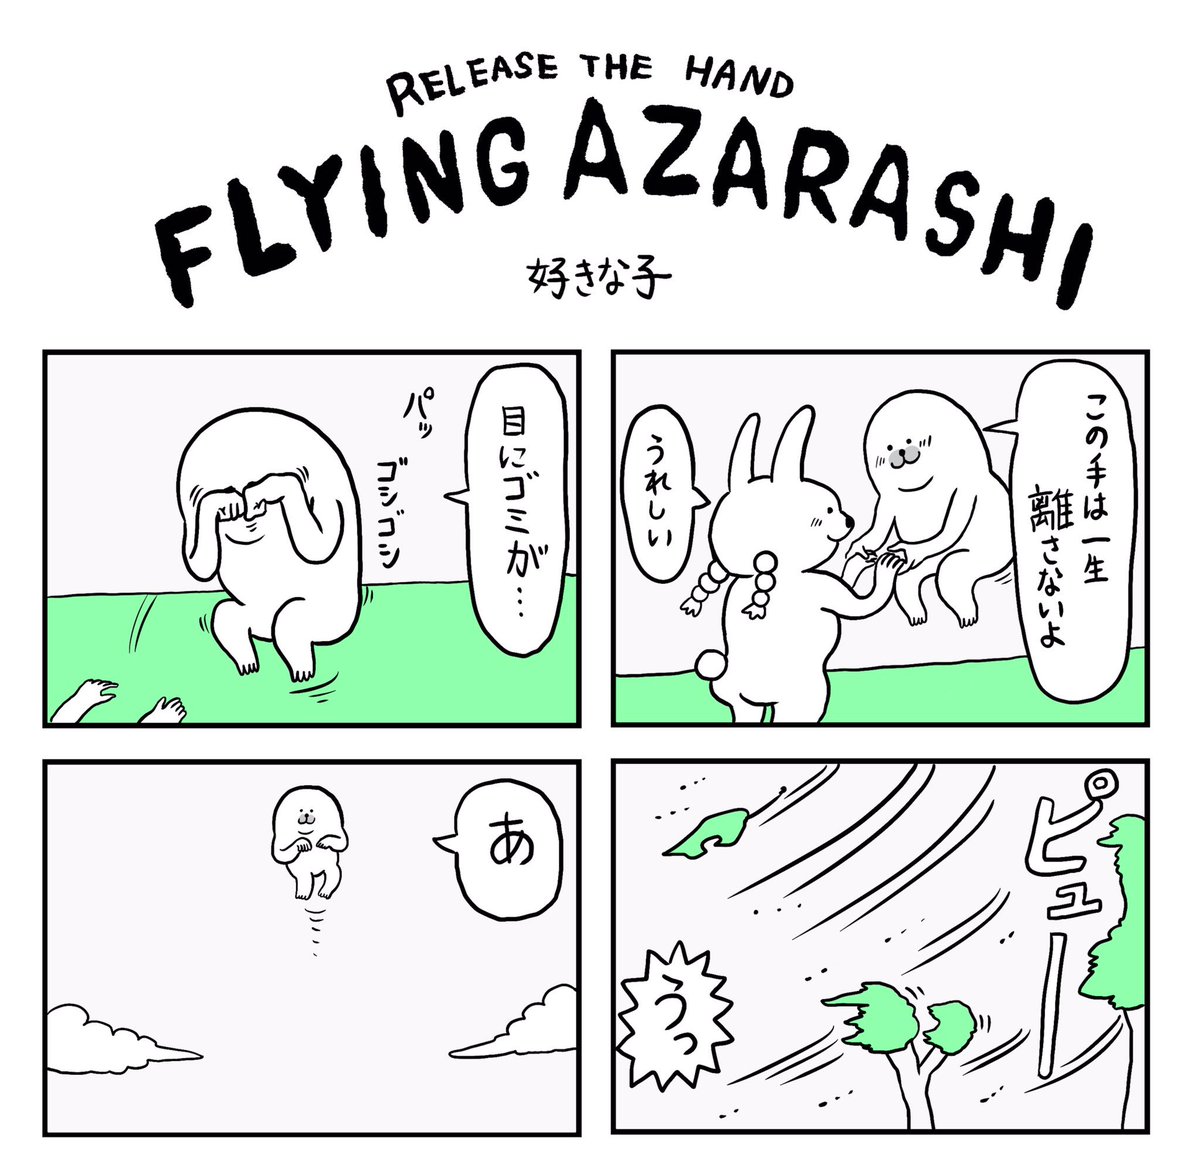 SUZURIには「何かを掴んでないとどこかに飛んで行っちゃうアザラシ」のTシャツもあるよ。いまなら千円引き

あ〜〜〜

https://t.co/YxzIDW7O95 